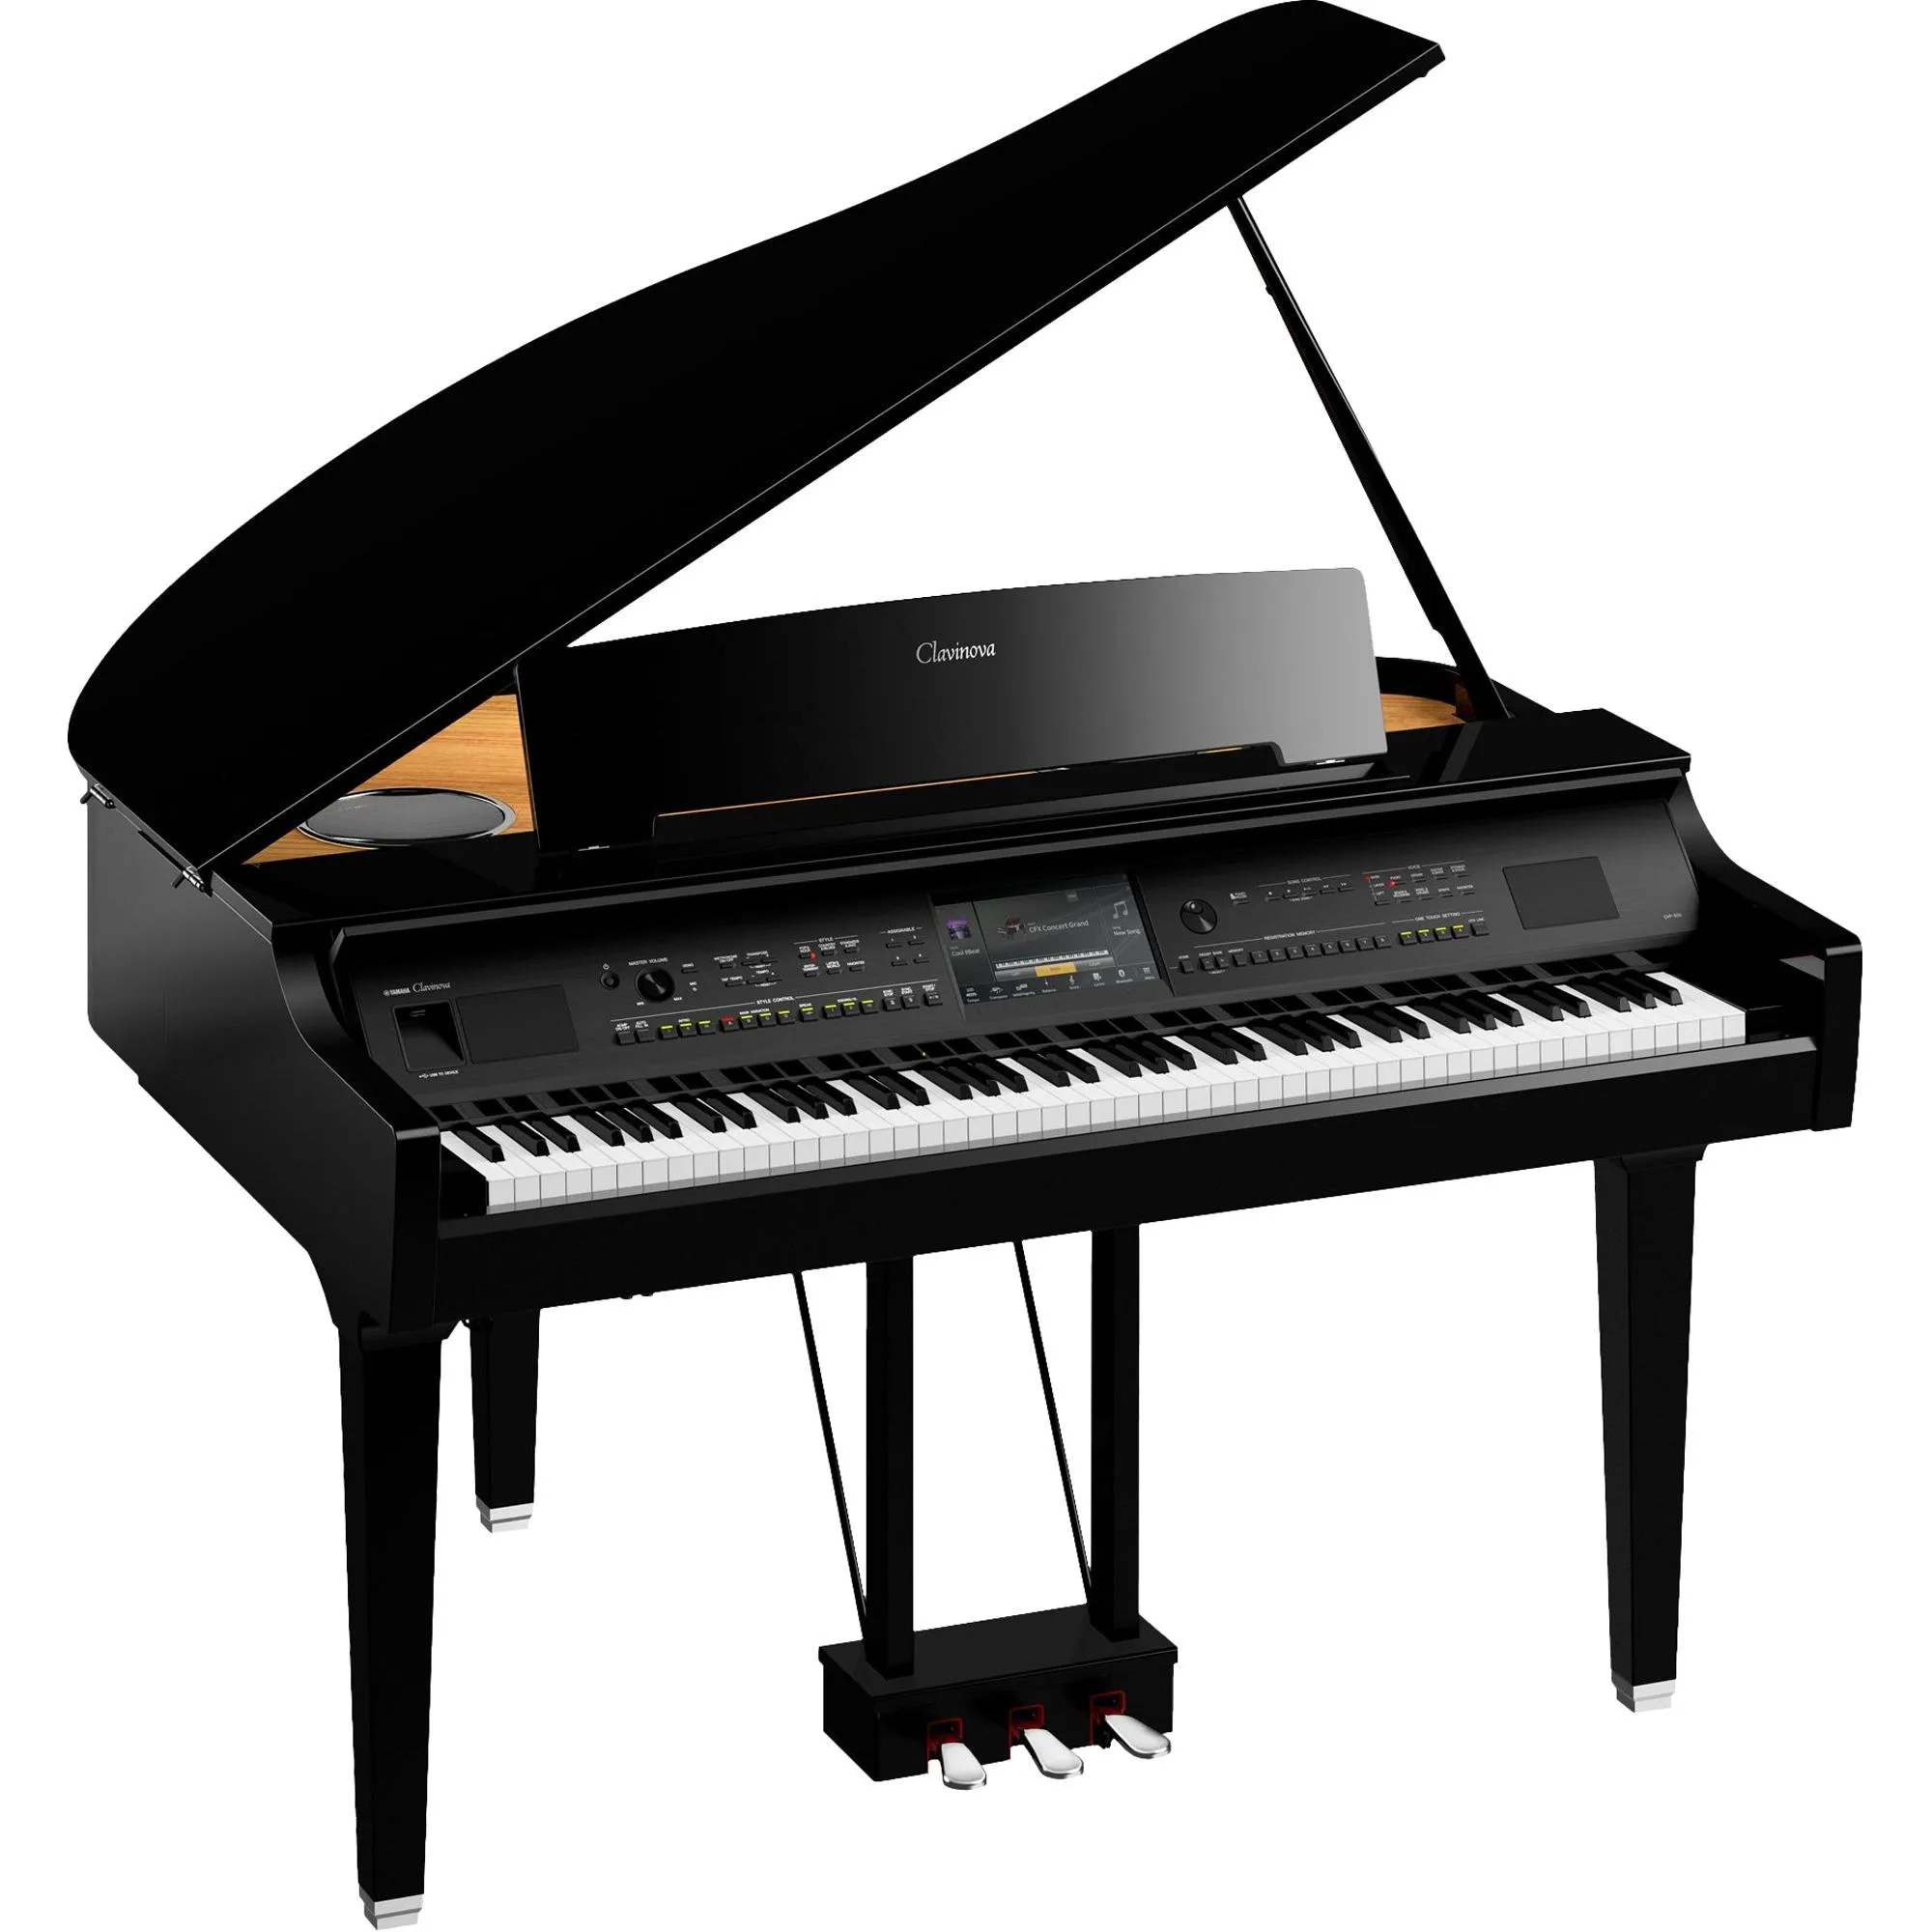 Piano de Cauda Digital Yamaha CVP809GP Preto Polido por 78.891,99 à vista no boleto/pix ou parcele em até 12x sem juros. Compre na loja Mundomax!